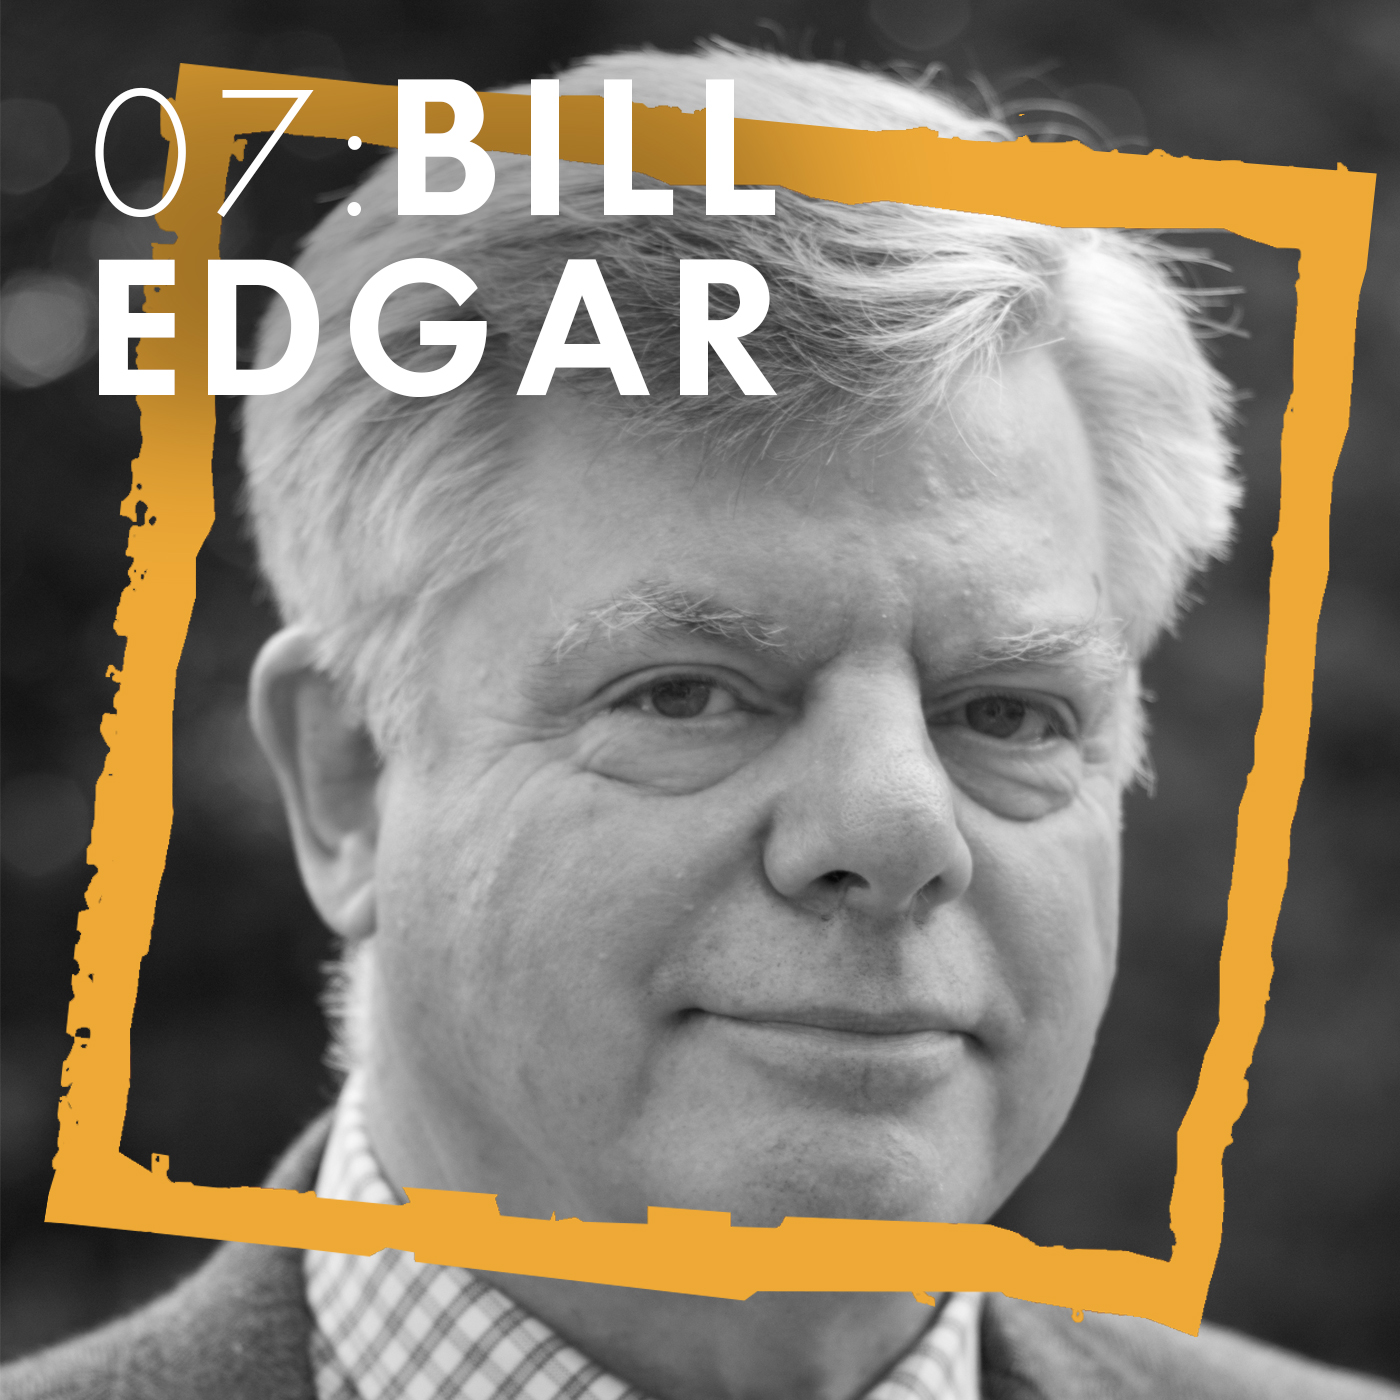 Episode 07: Bill Edgar